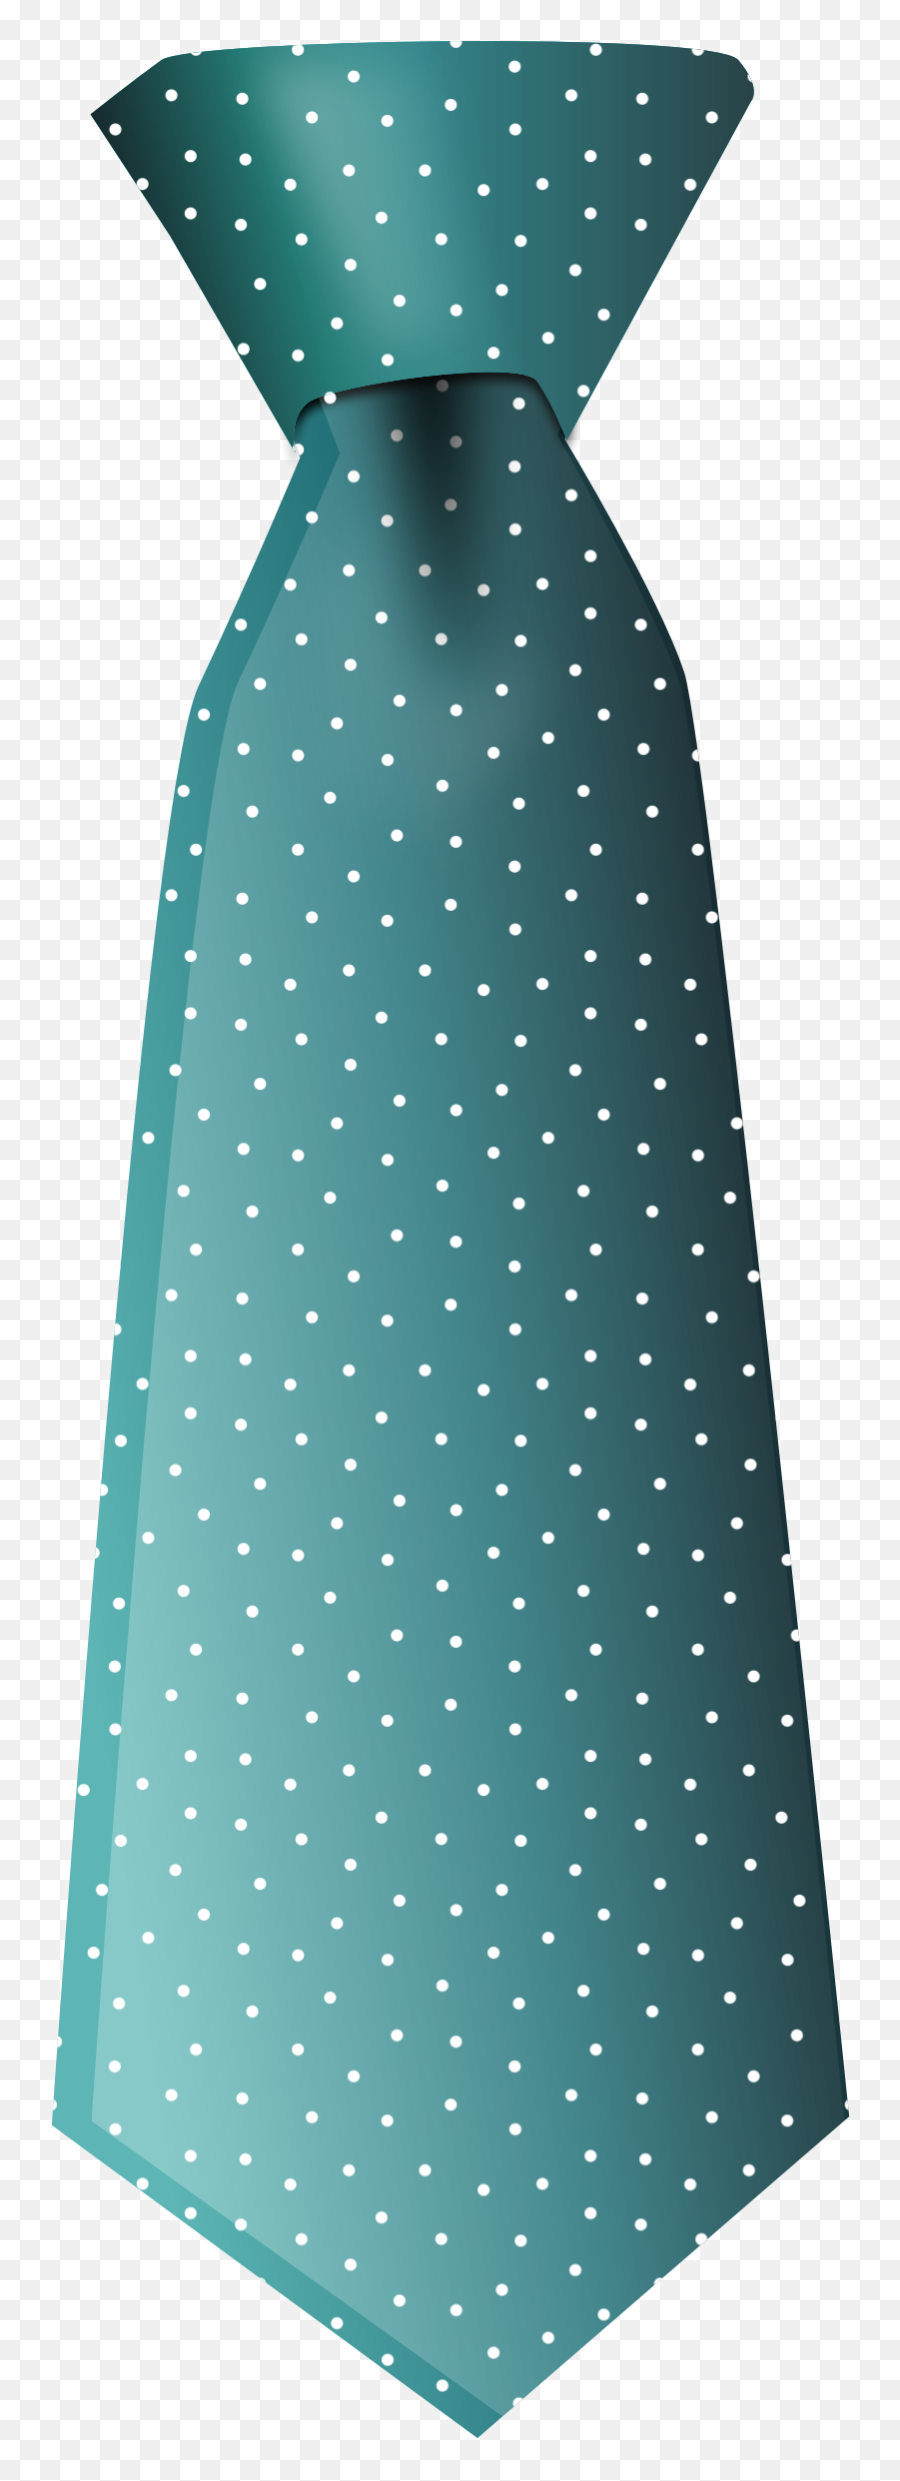 Necktie Vector Tie Pattern Transparent - Necktie Clipart Png,Necktie Png